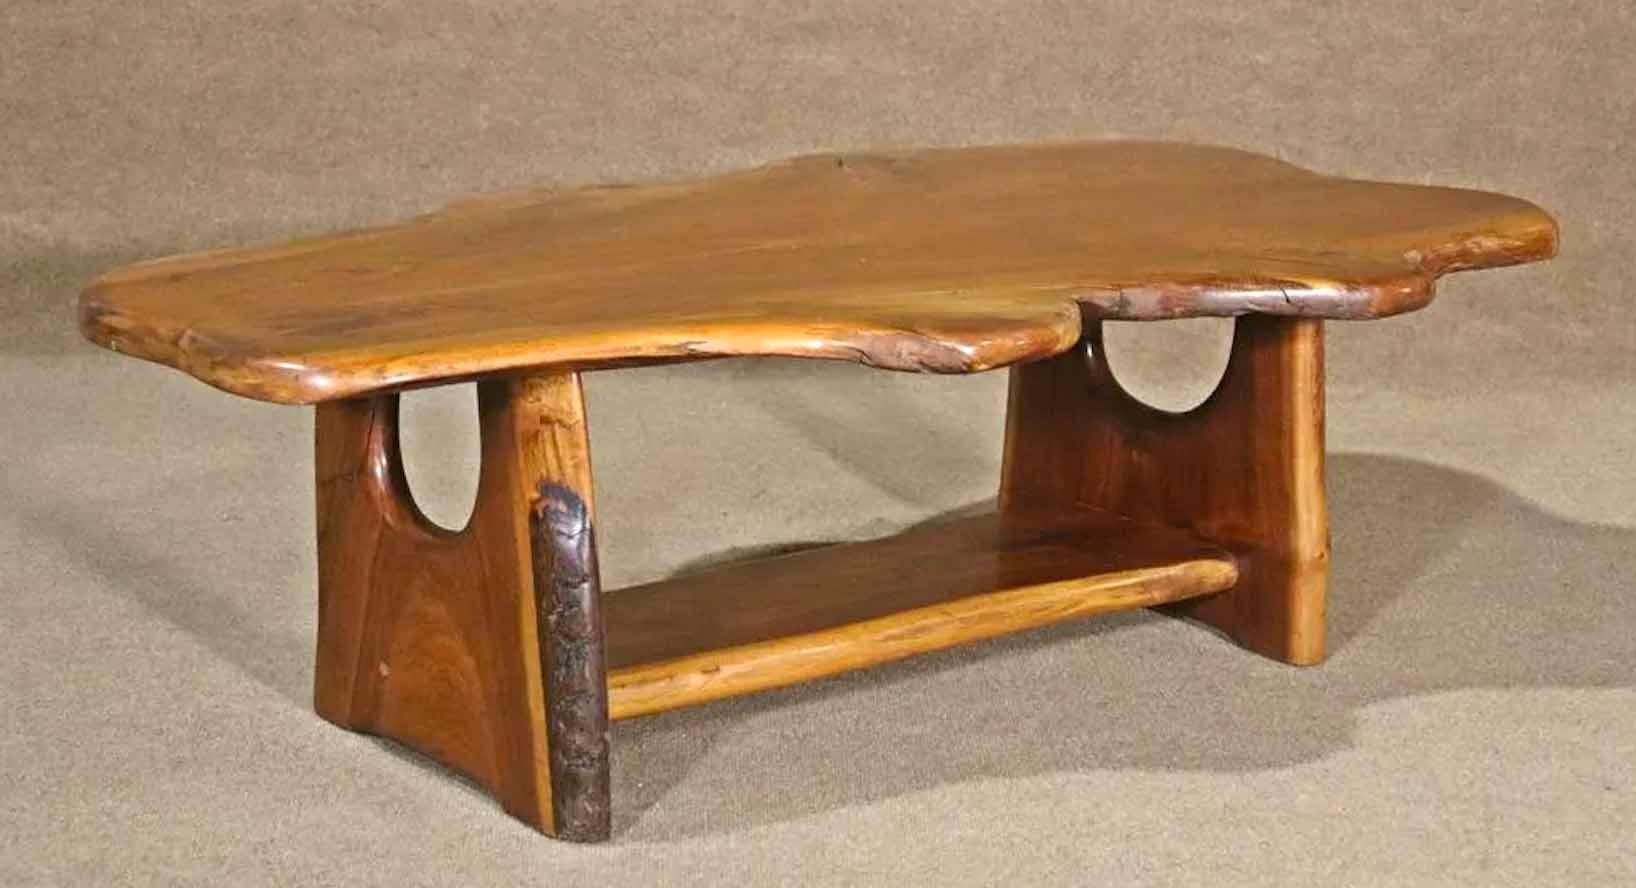 Table basse moderne du milieu du siècle avec une seule dalle posée sur une base entièrement en bois. Grande forme organique à bord vif.
Veuillez confirmer l'emplacement.